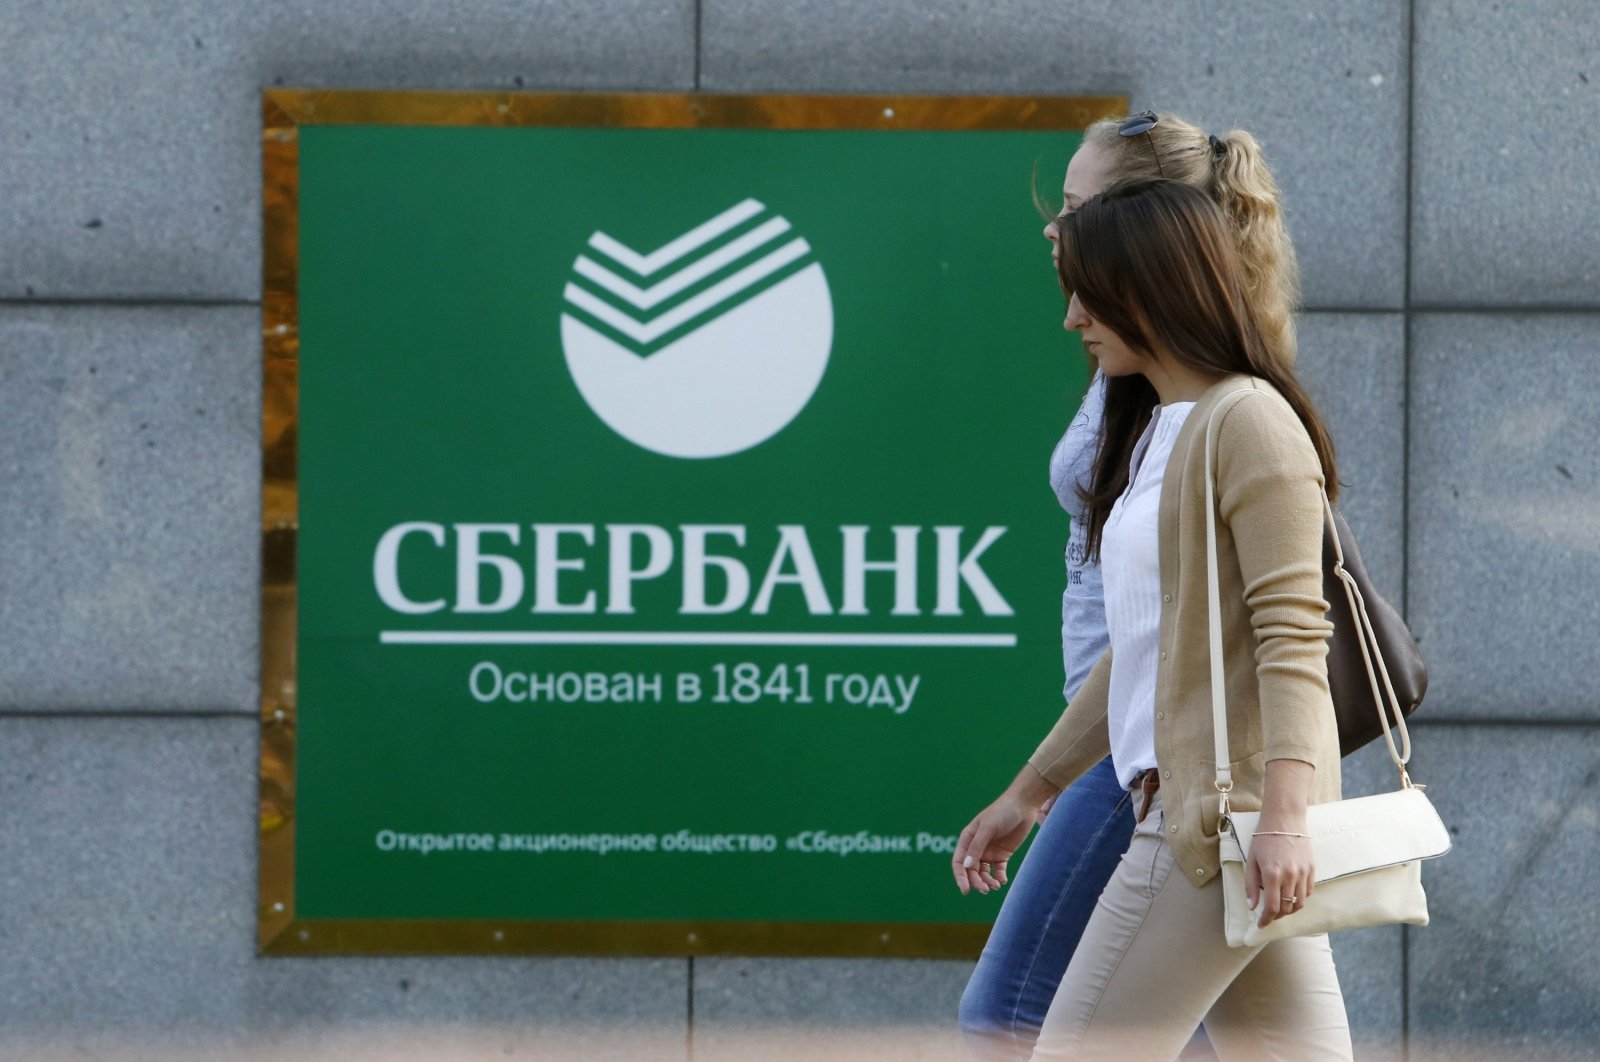 Keuangan Islam tumbuh pesat, mencapai ,7 triliun pada tahun 2025: pejabat Sberbank